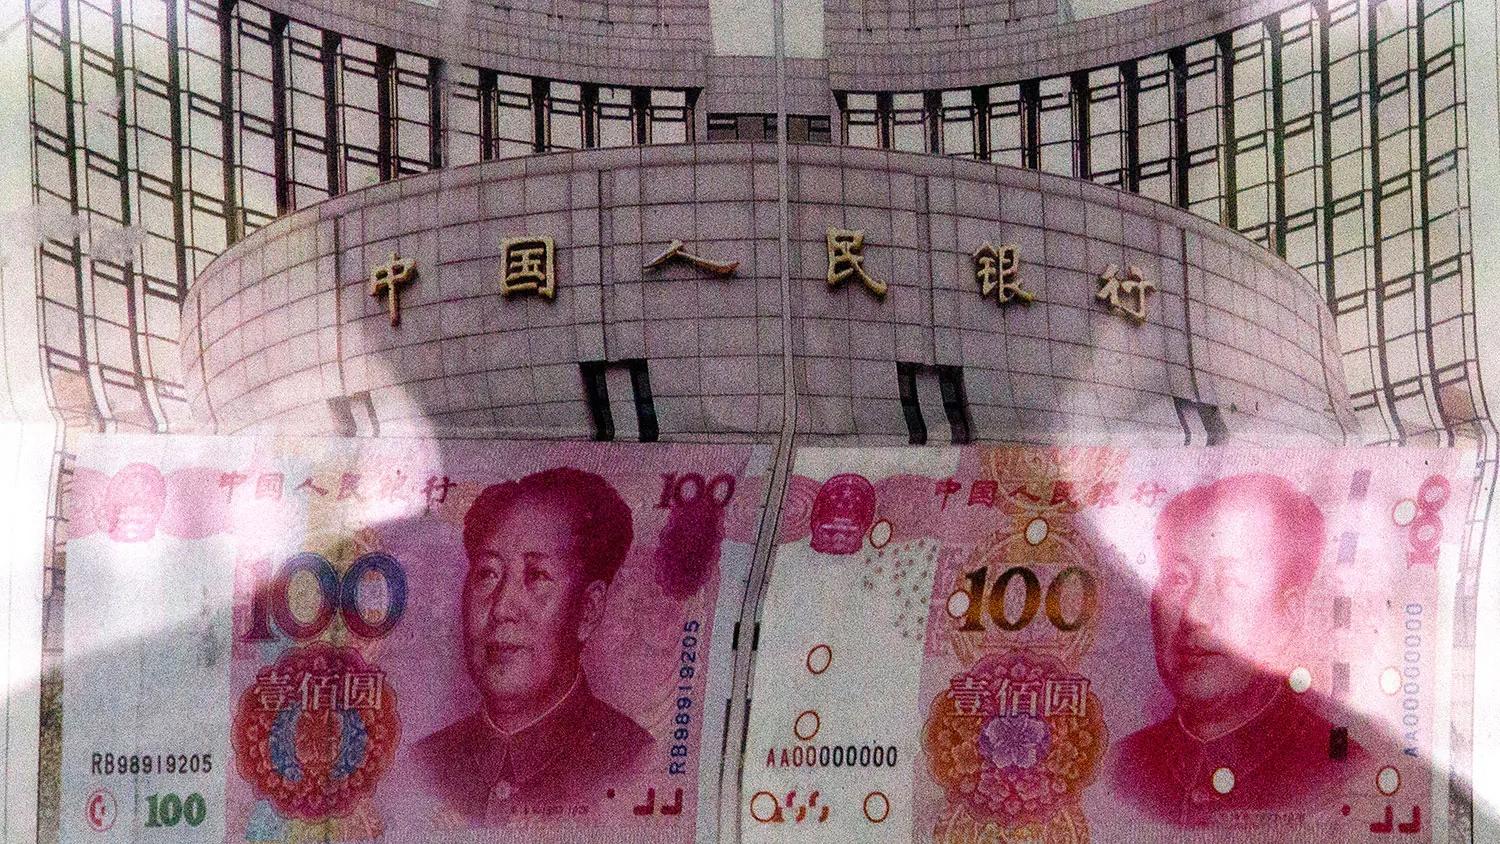 中國外匯占款七連降 出口和外商投資面臨嚴重問題